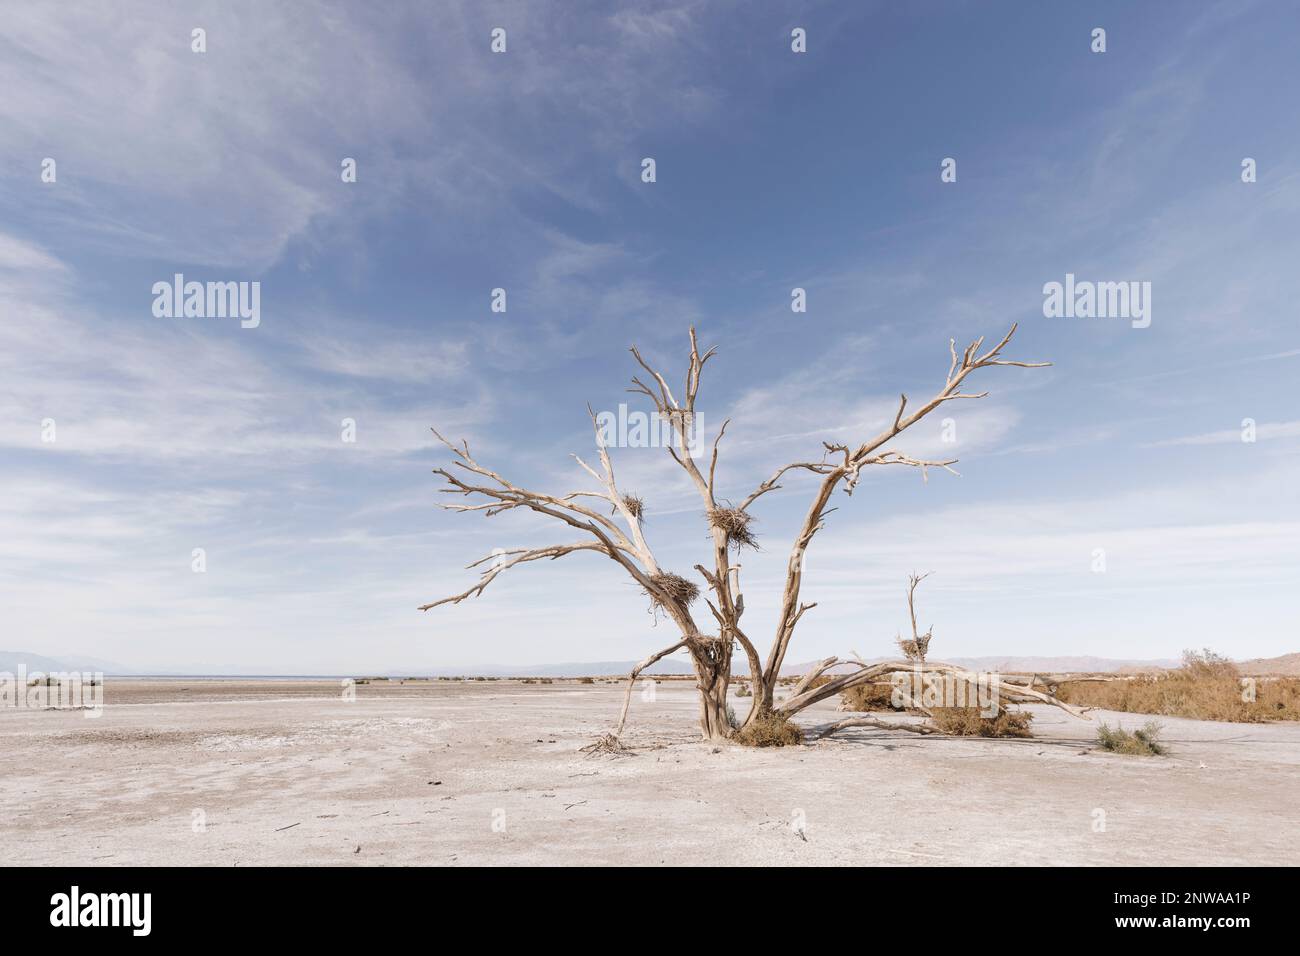 Un arbre de coton mort avec des nids de hérons abandonnés depuis longtemps se dresse le long de la rive sud de la mer de Salton, en Californie, dévastée par la sécheresse. Banque D'Images